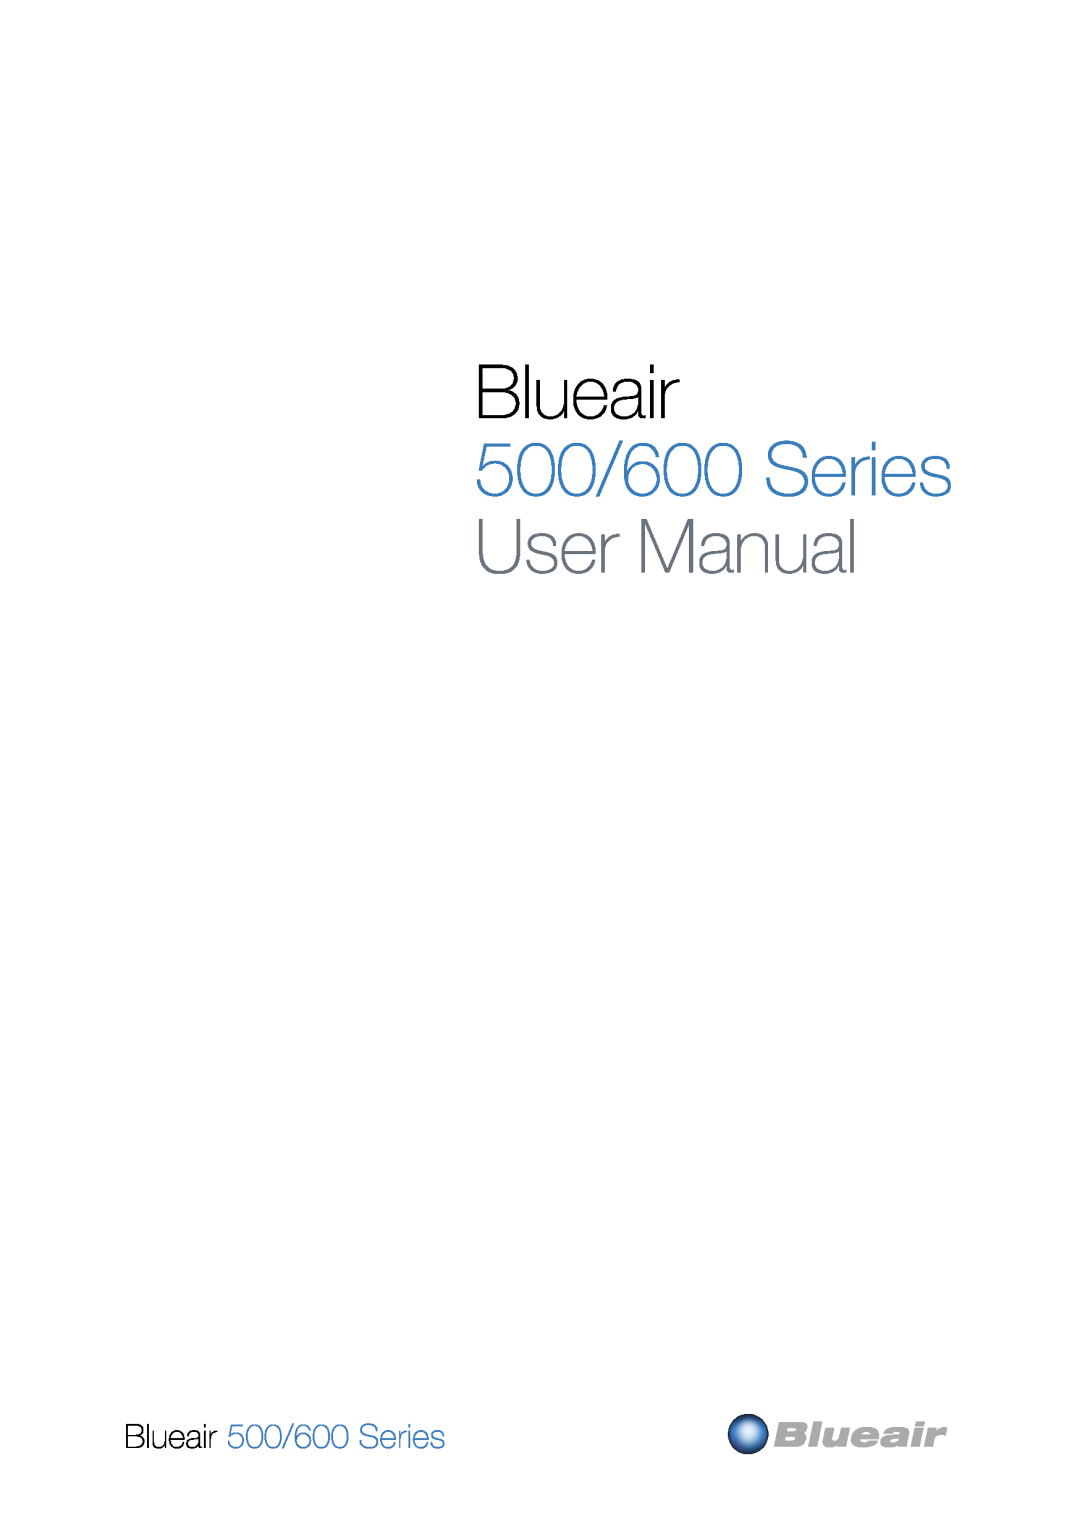 Blueair user manual Blueair 500/600 Series 